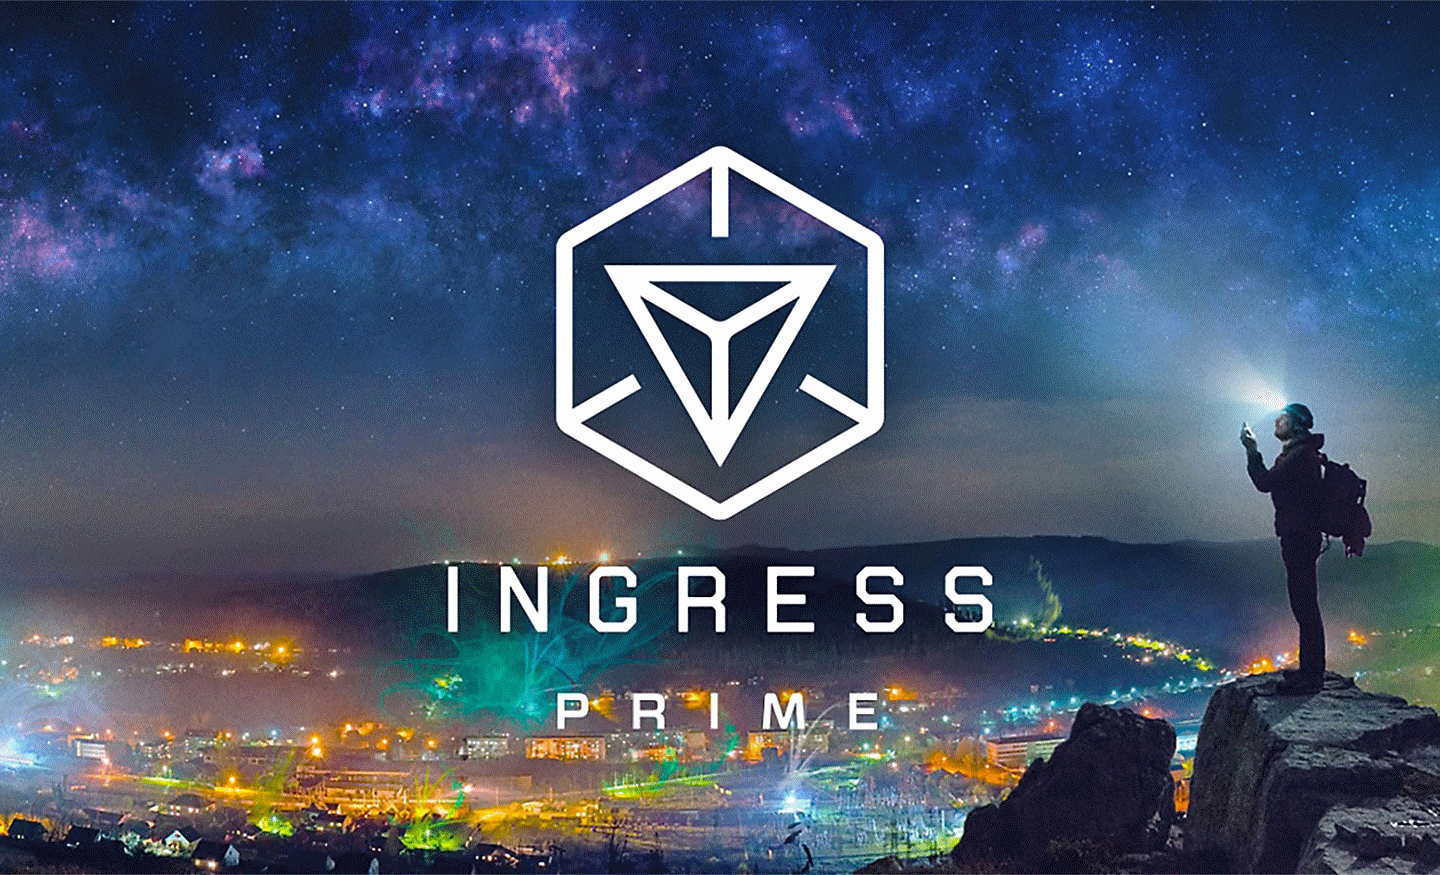 Imagen de la ciudad desde arriba con el logotipo de Ingress Prime superpuesto en el medio